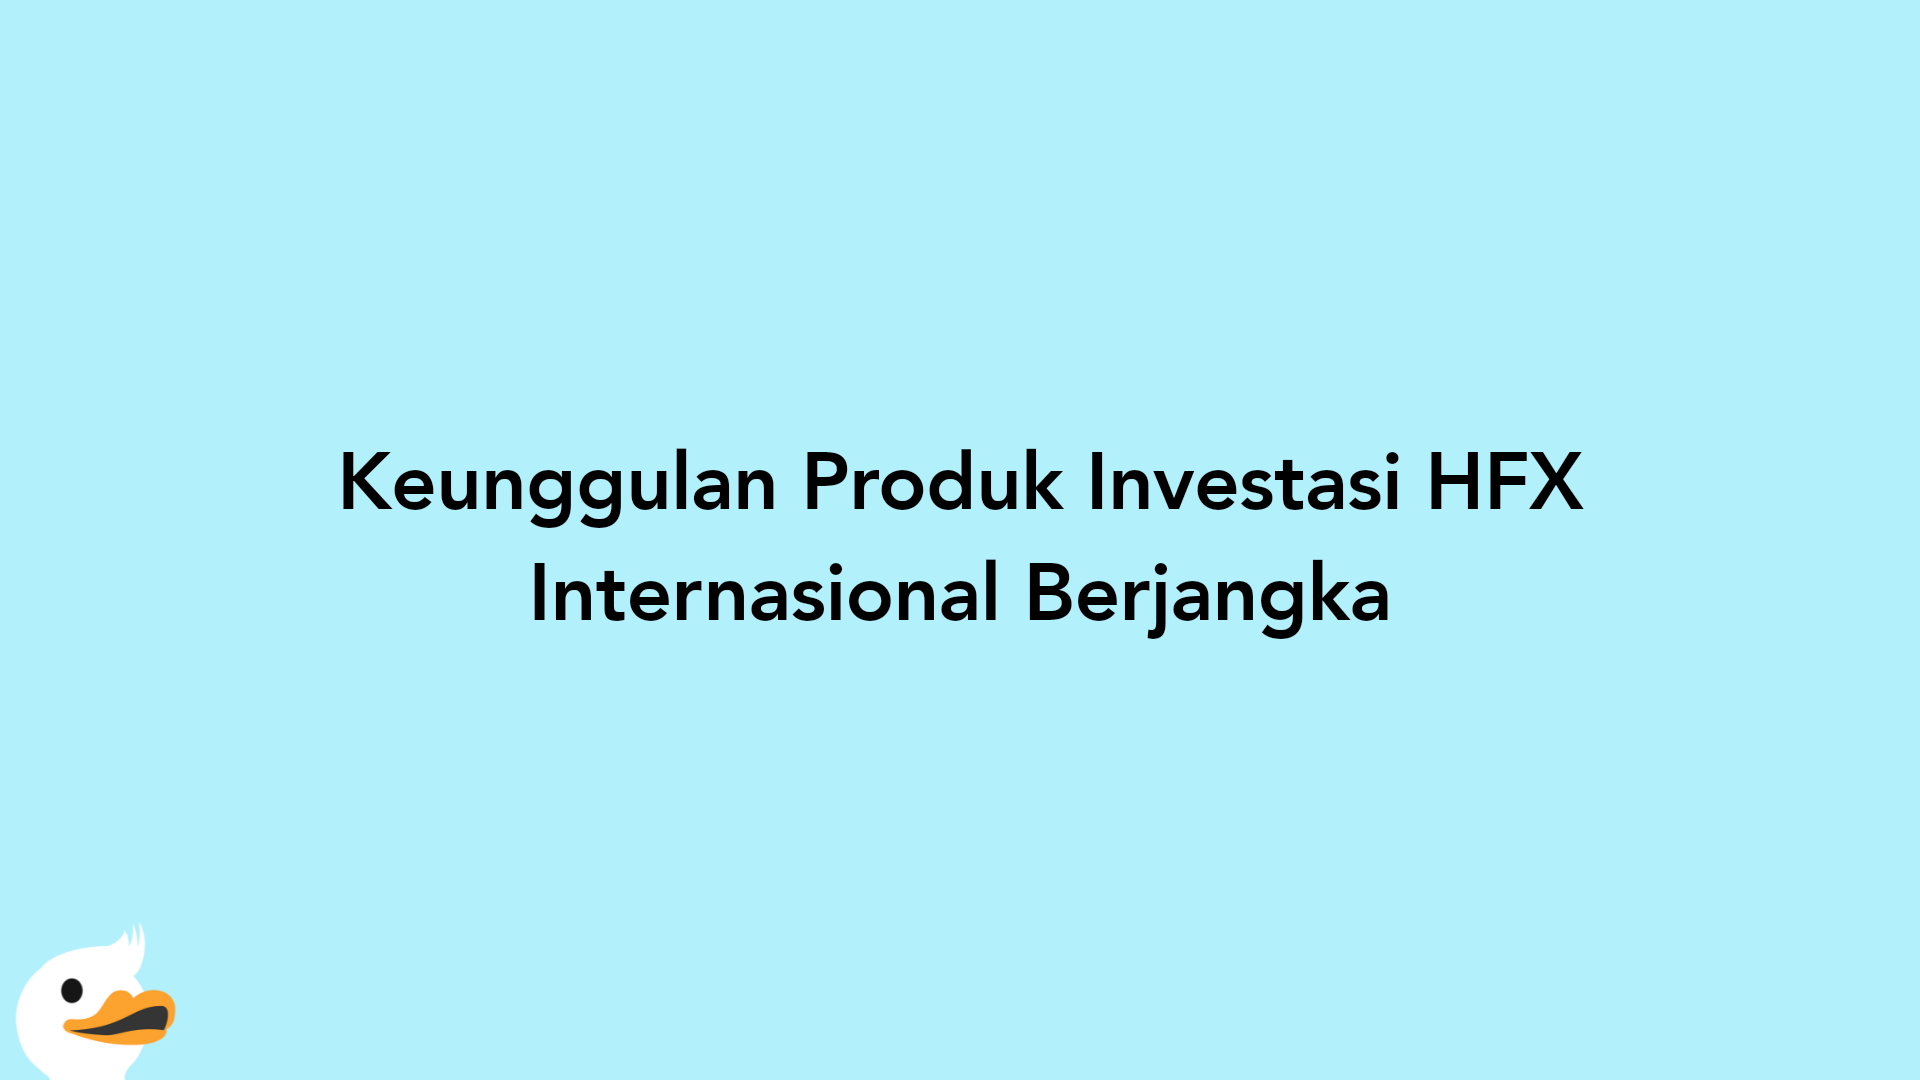 Keunggulan Produk Investasi HFX Internasional Berjangka